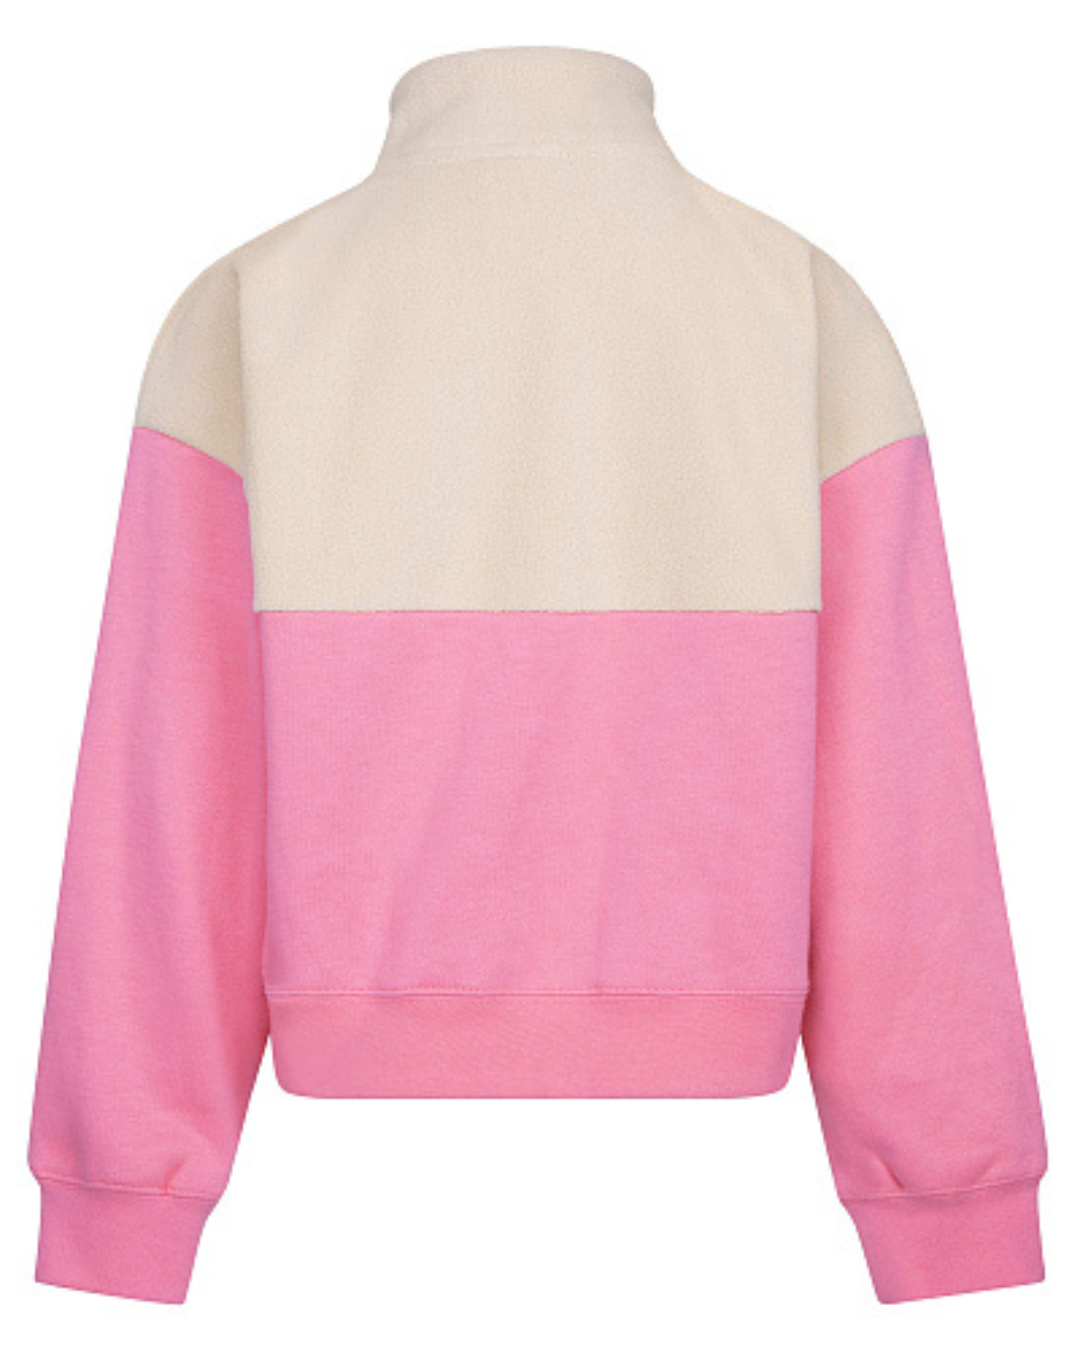 Nike Fleece Kids Sweatshirt - Pink